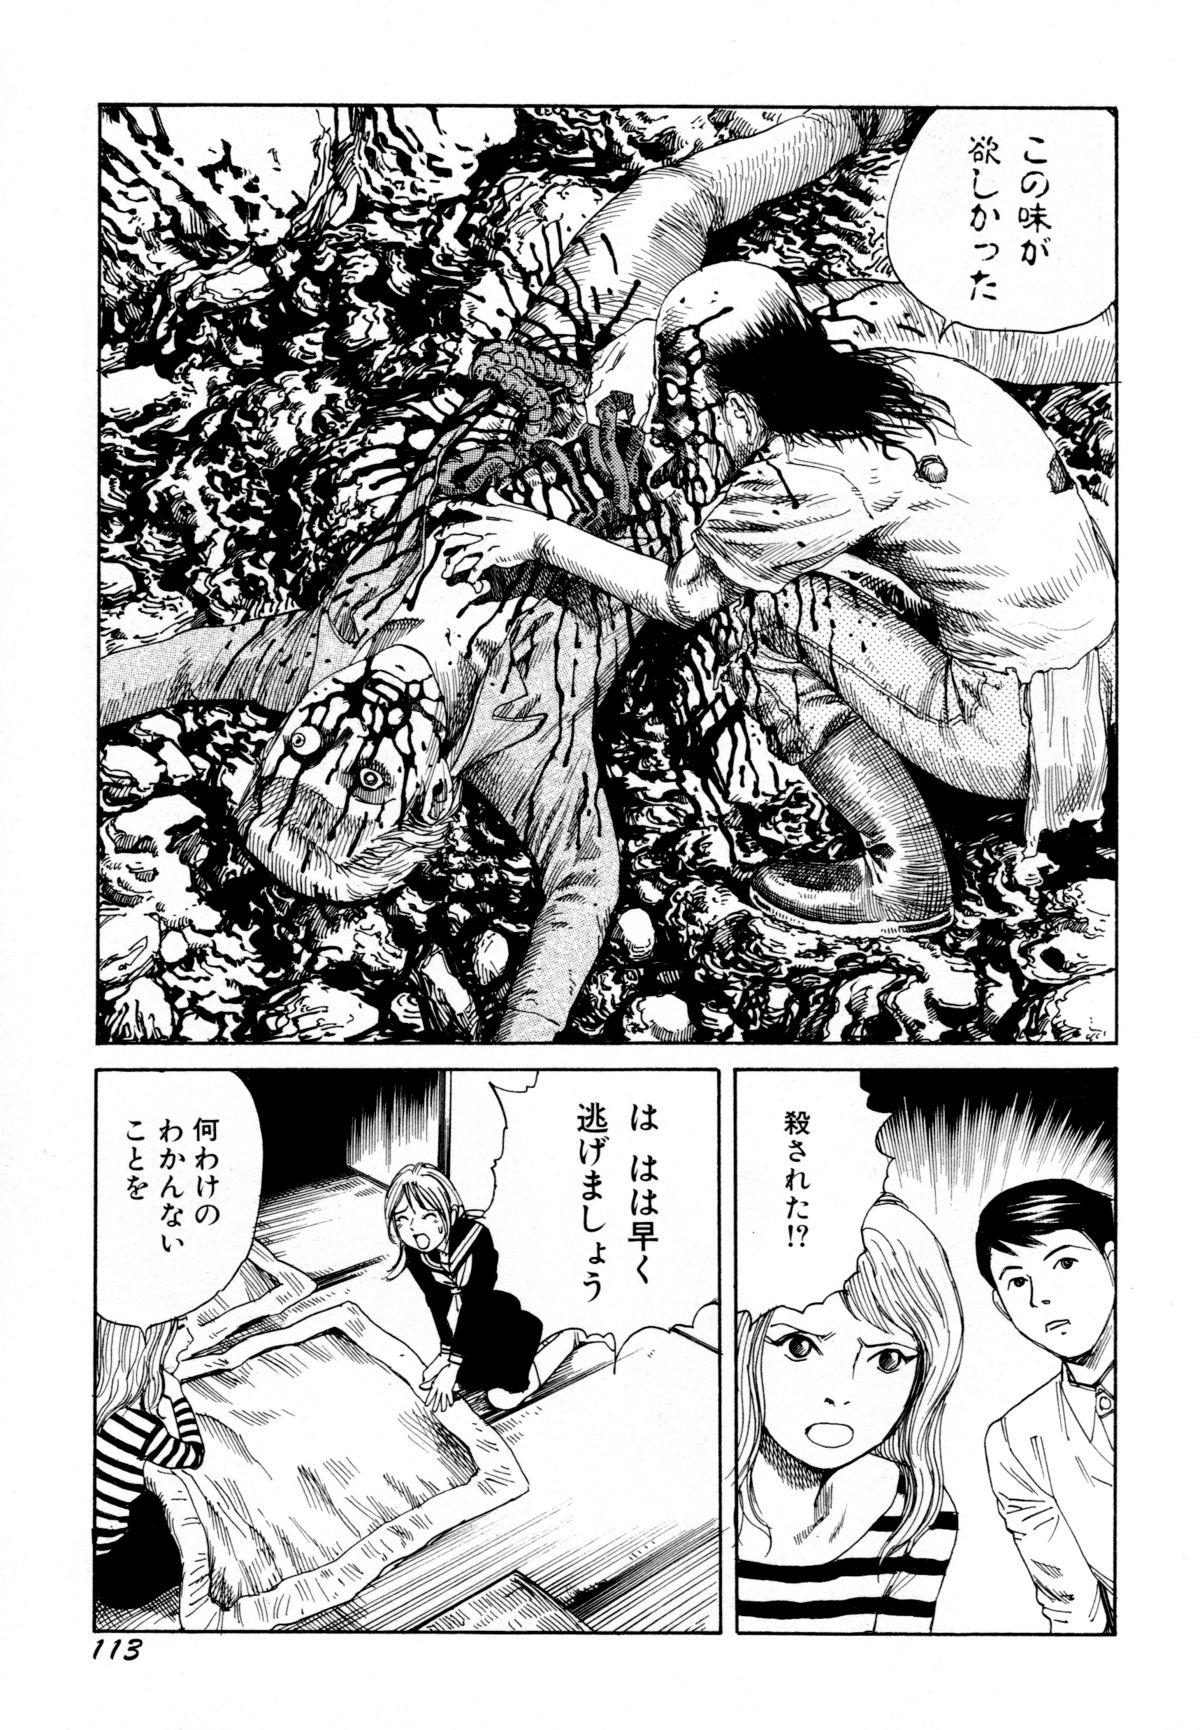 Arijigoku vs Barabara Shoujo - Antlion vs BaraBara Girl 114